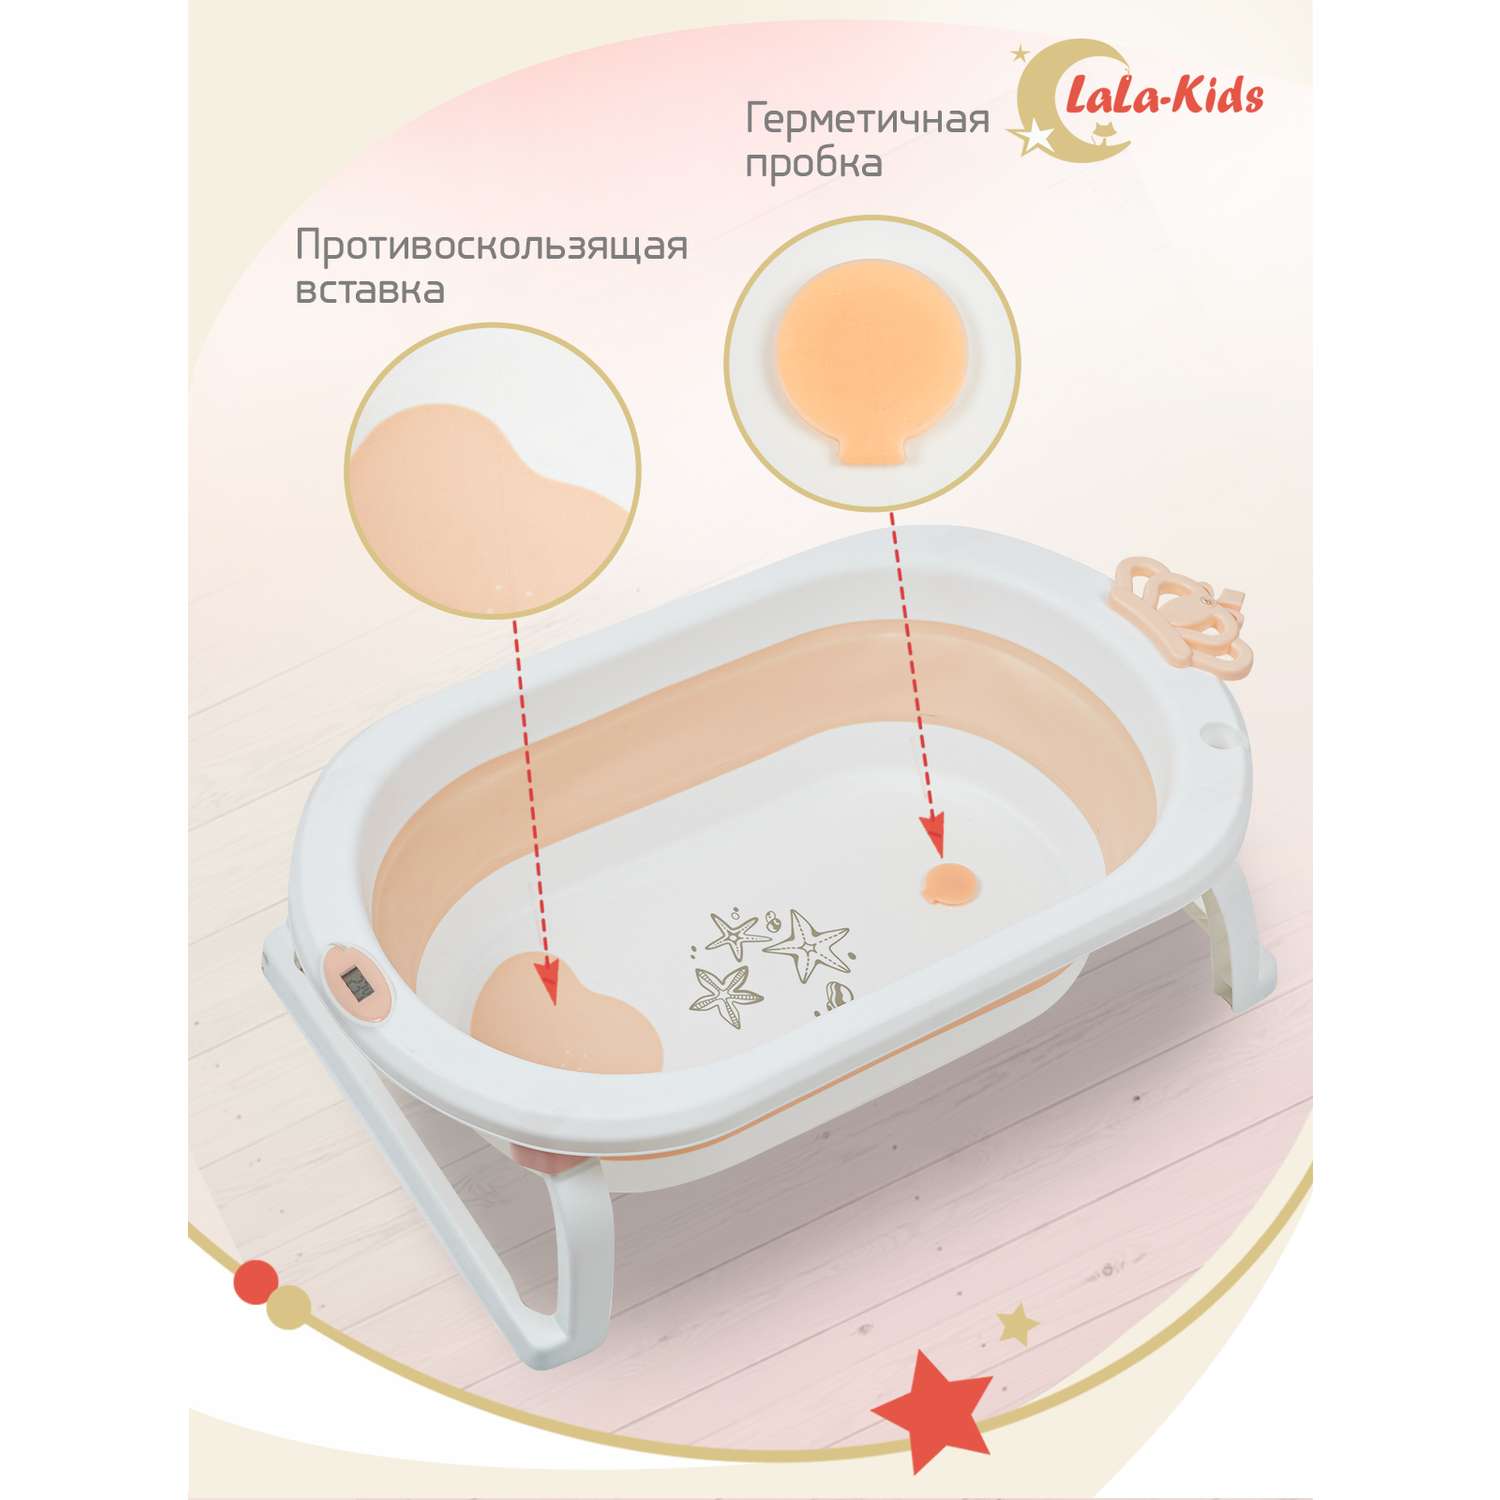 Детская ванночка с термометром LaLa-Kids складная для купания новорожденных с термометром и матрасиком в комплекте - фото 6